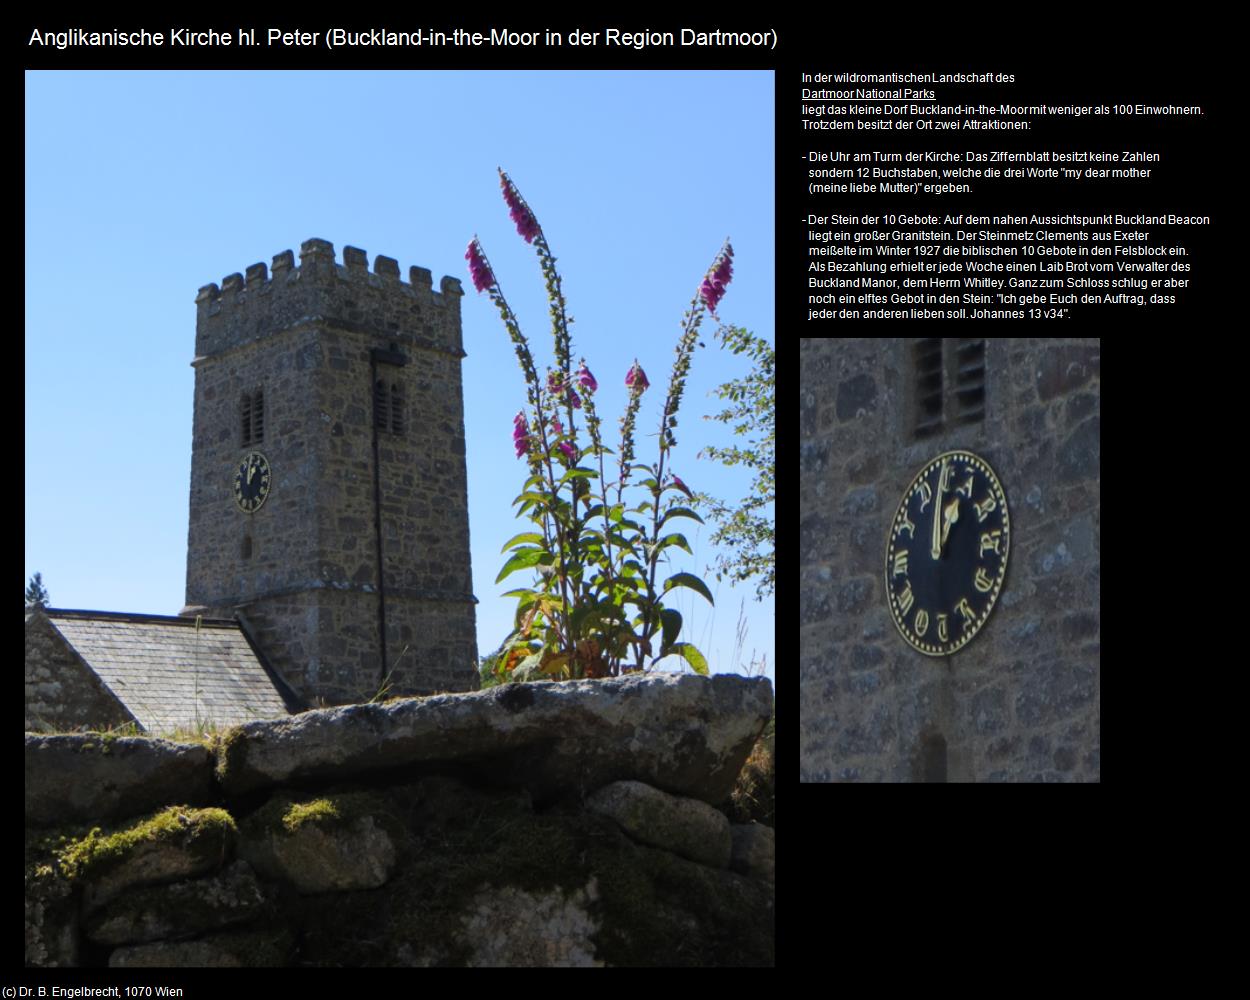 Anglikanische Kirche hl. Peter (Buckland-in-the-Moor) (Dartmoor, England) in Kulturatlas-ENGLAND und WALES(c)B.Engelbrecht